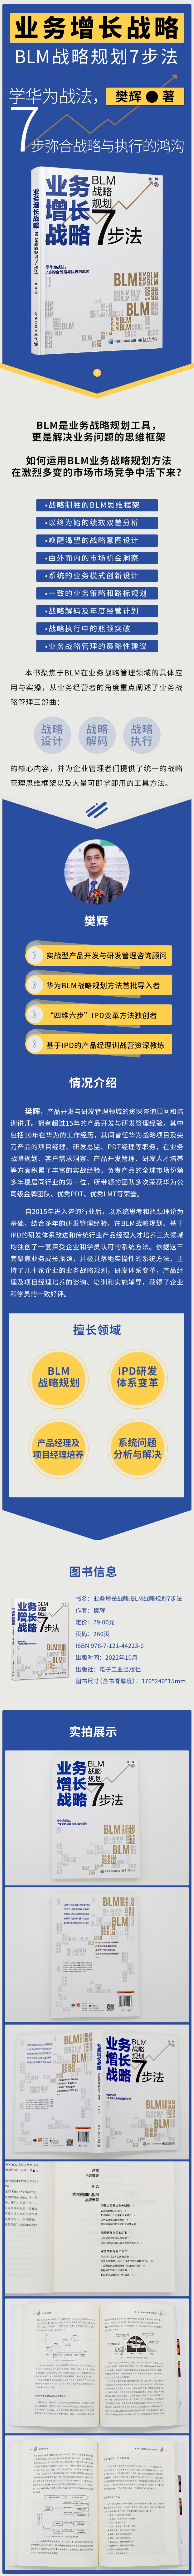 业务增长战略 : BLM战略规划7步法 樊辉 著 电子工业出版社